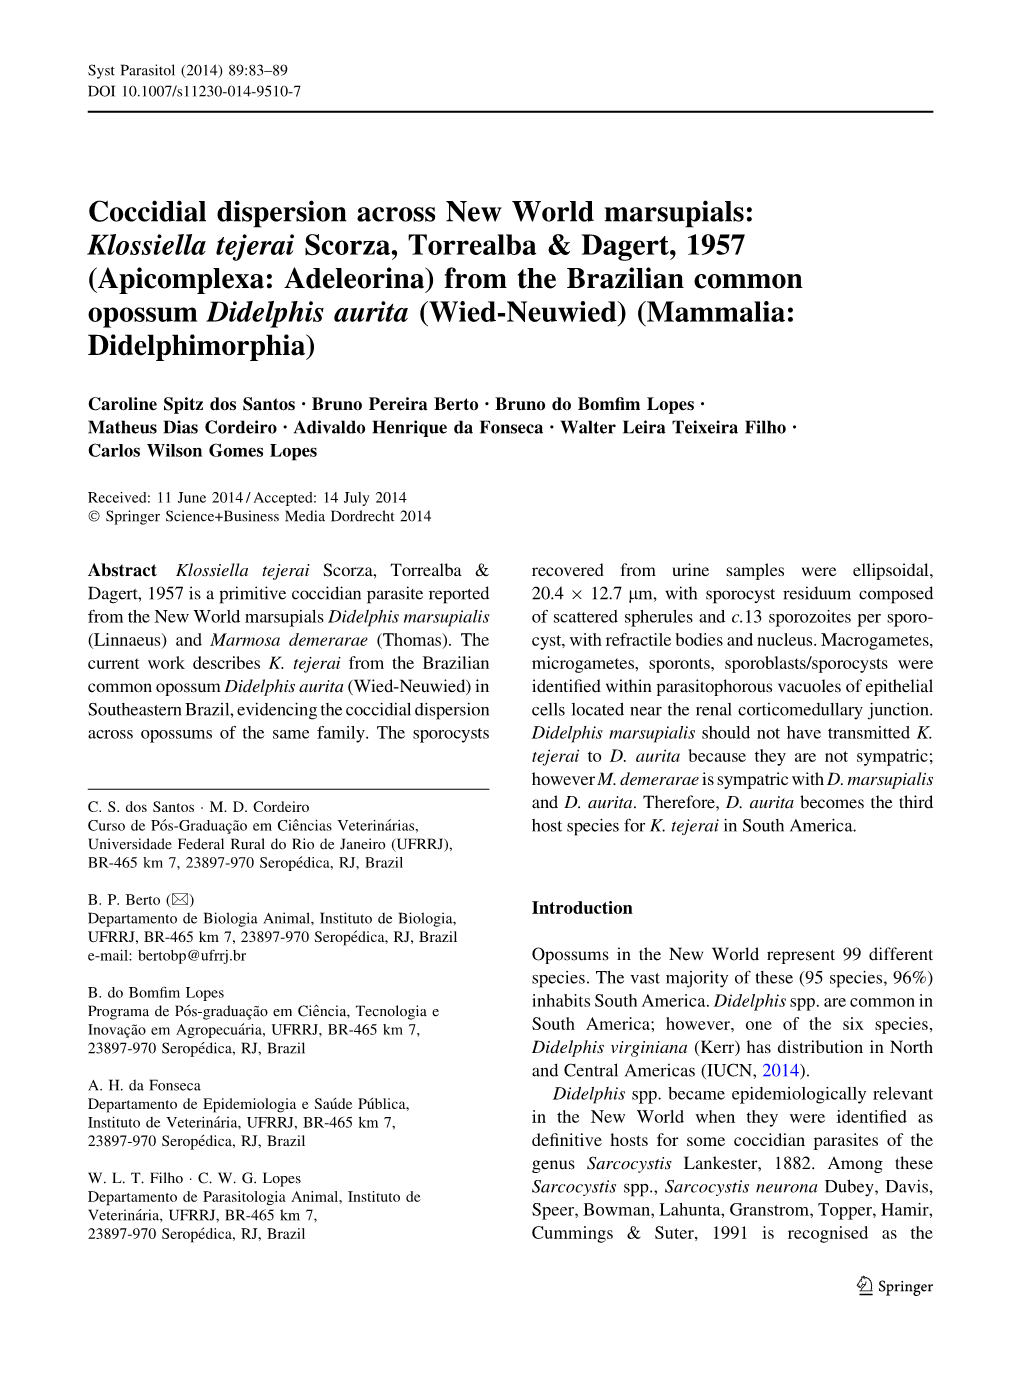 Coccidial Dispersion Across New World Marsupials: Klossiella Tejerai